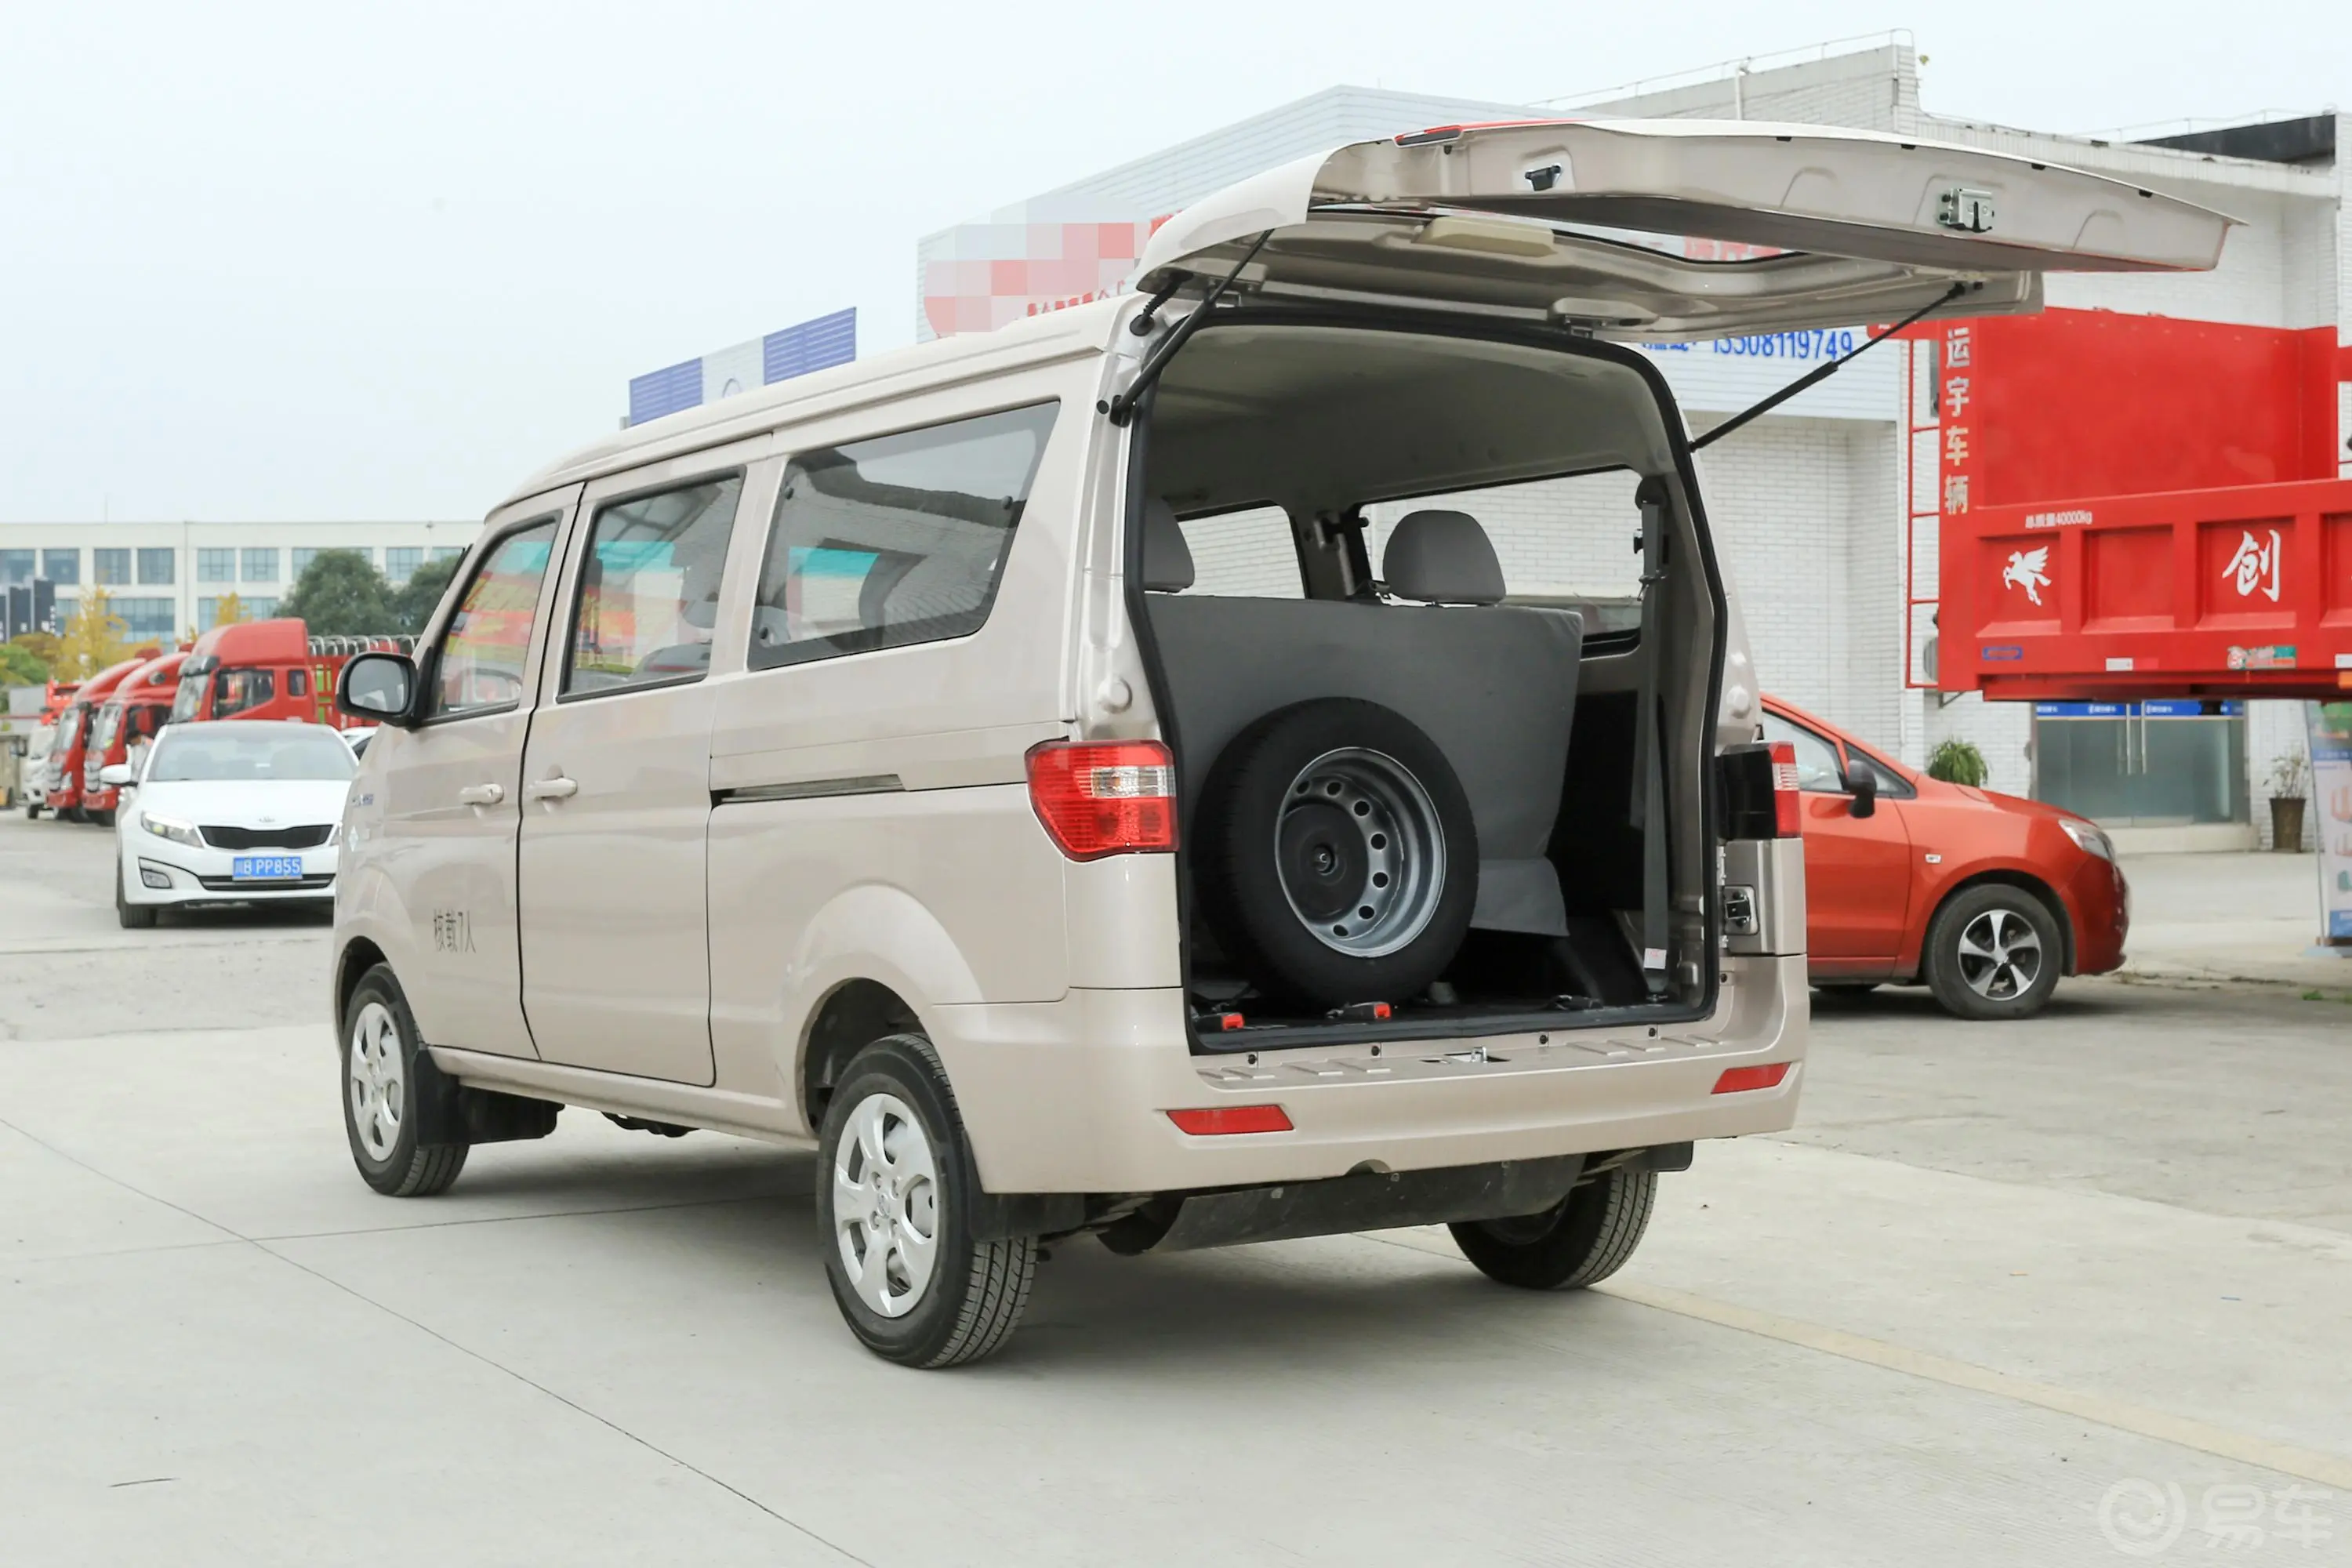 鑫源小海狮X301.5L 手动 舒适型中央空调版 7座 CNG后备厢开启45度侧拍